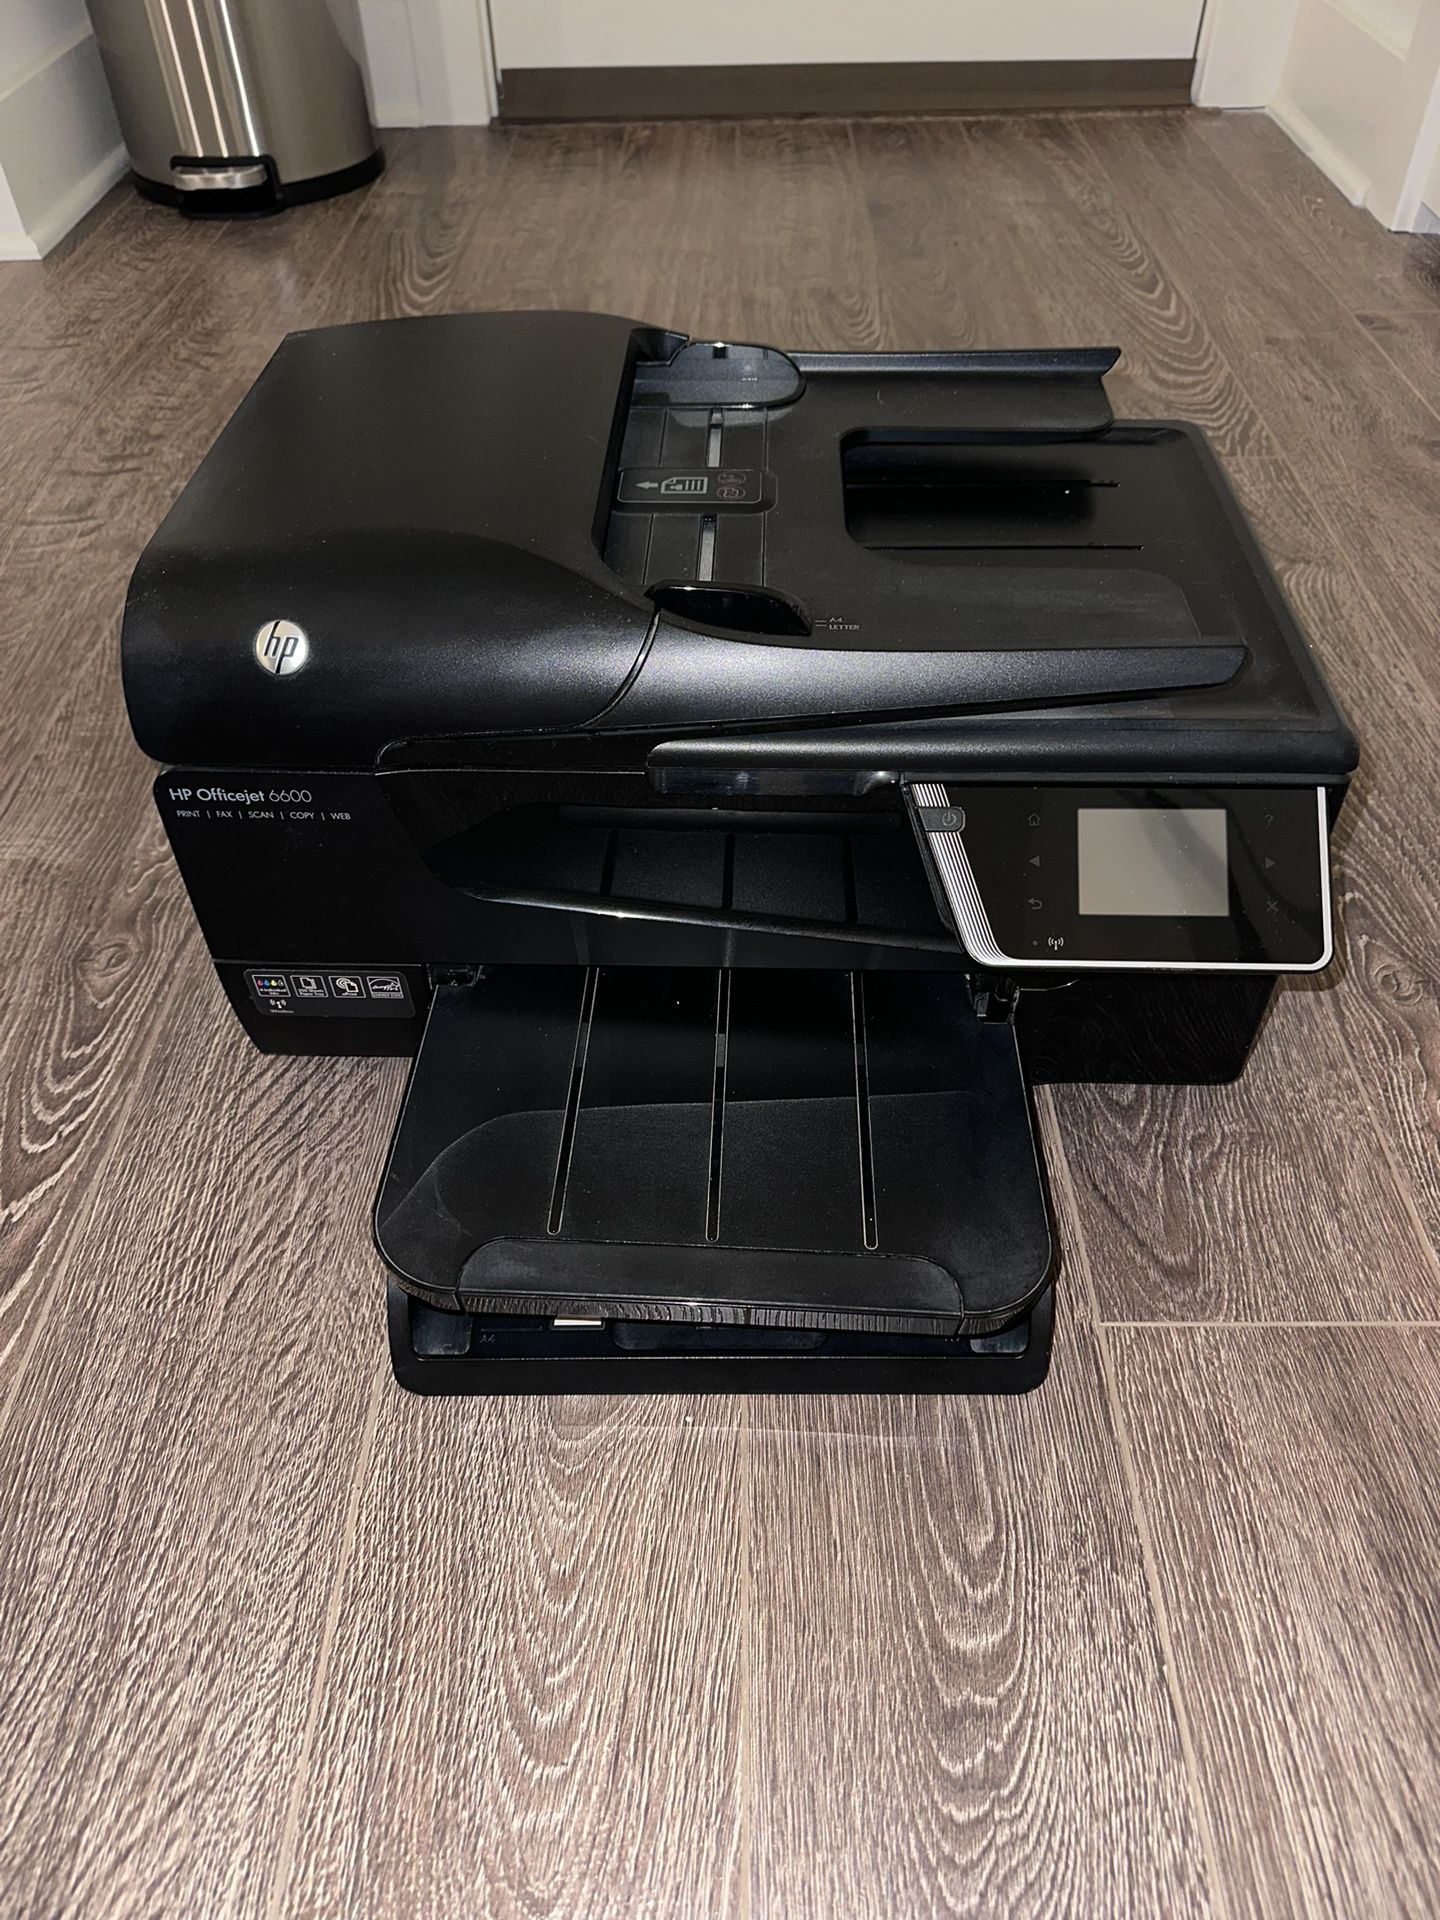 Hewlett Packard Office Jet 6600 Printer